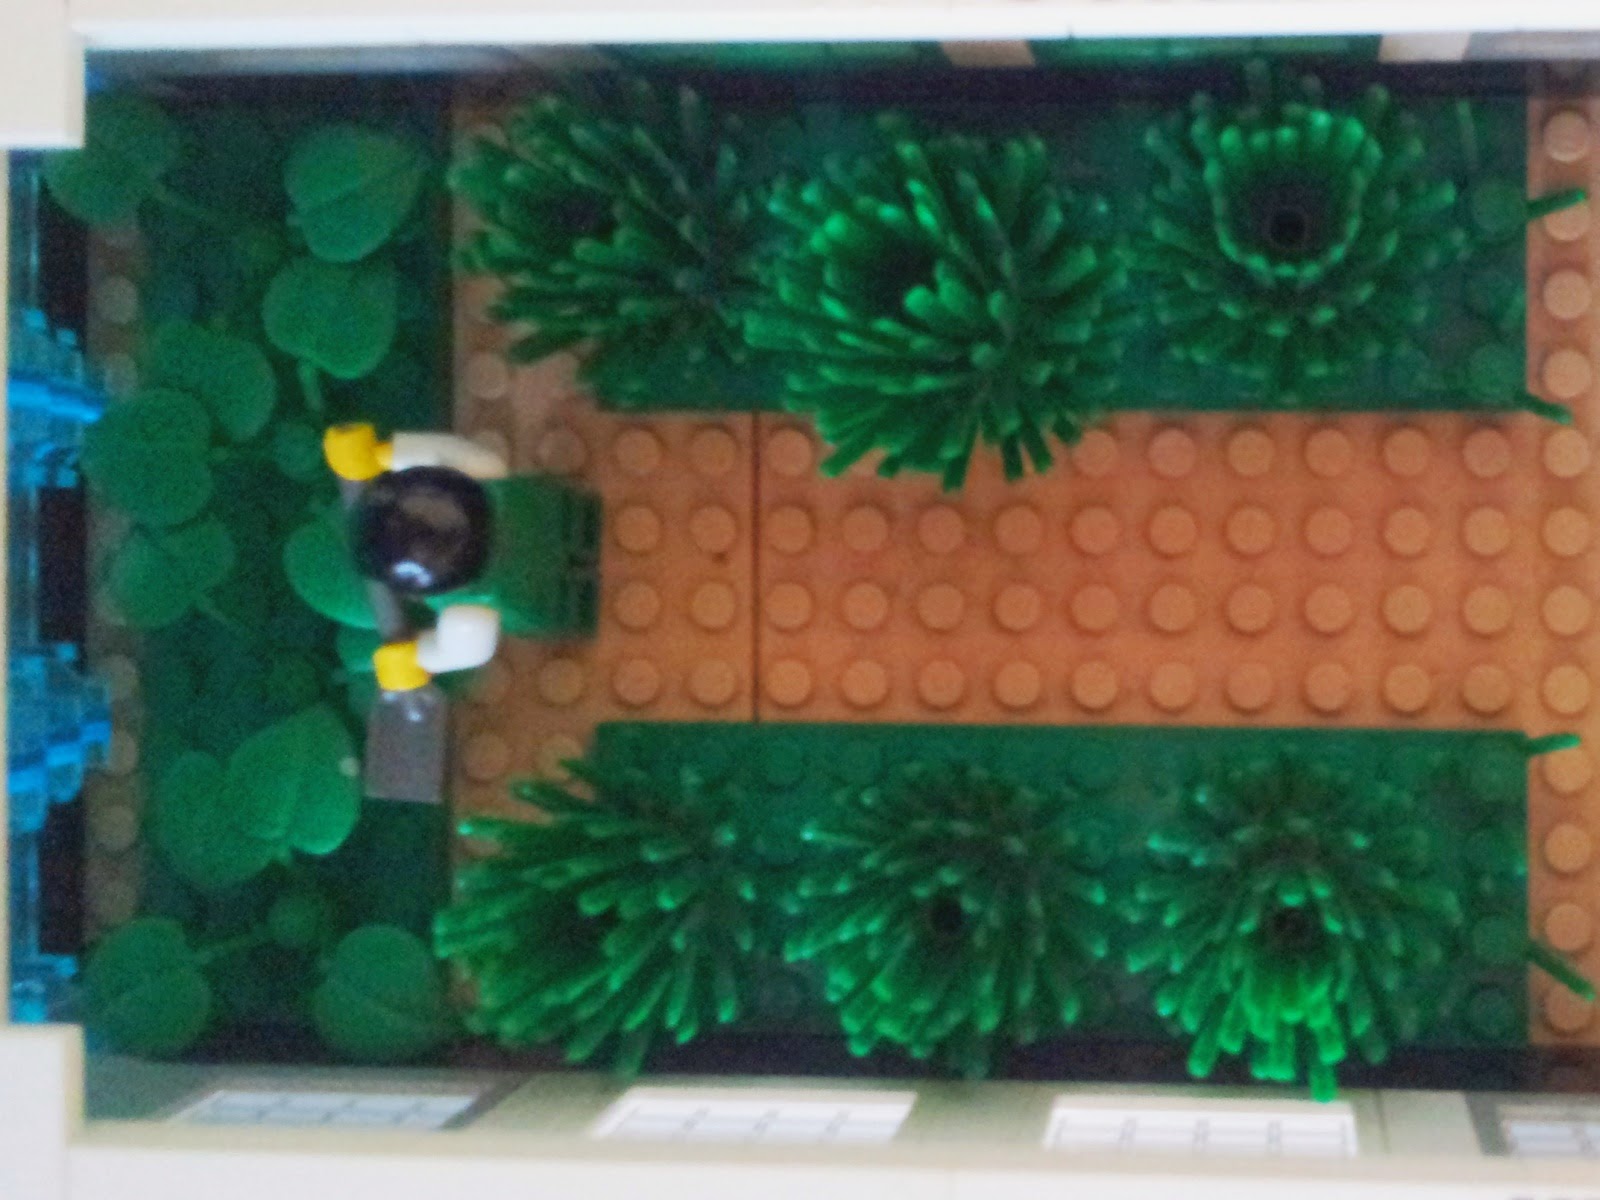 LEGO Mars base greenhouse